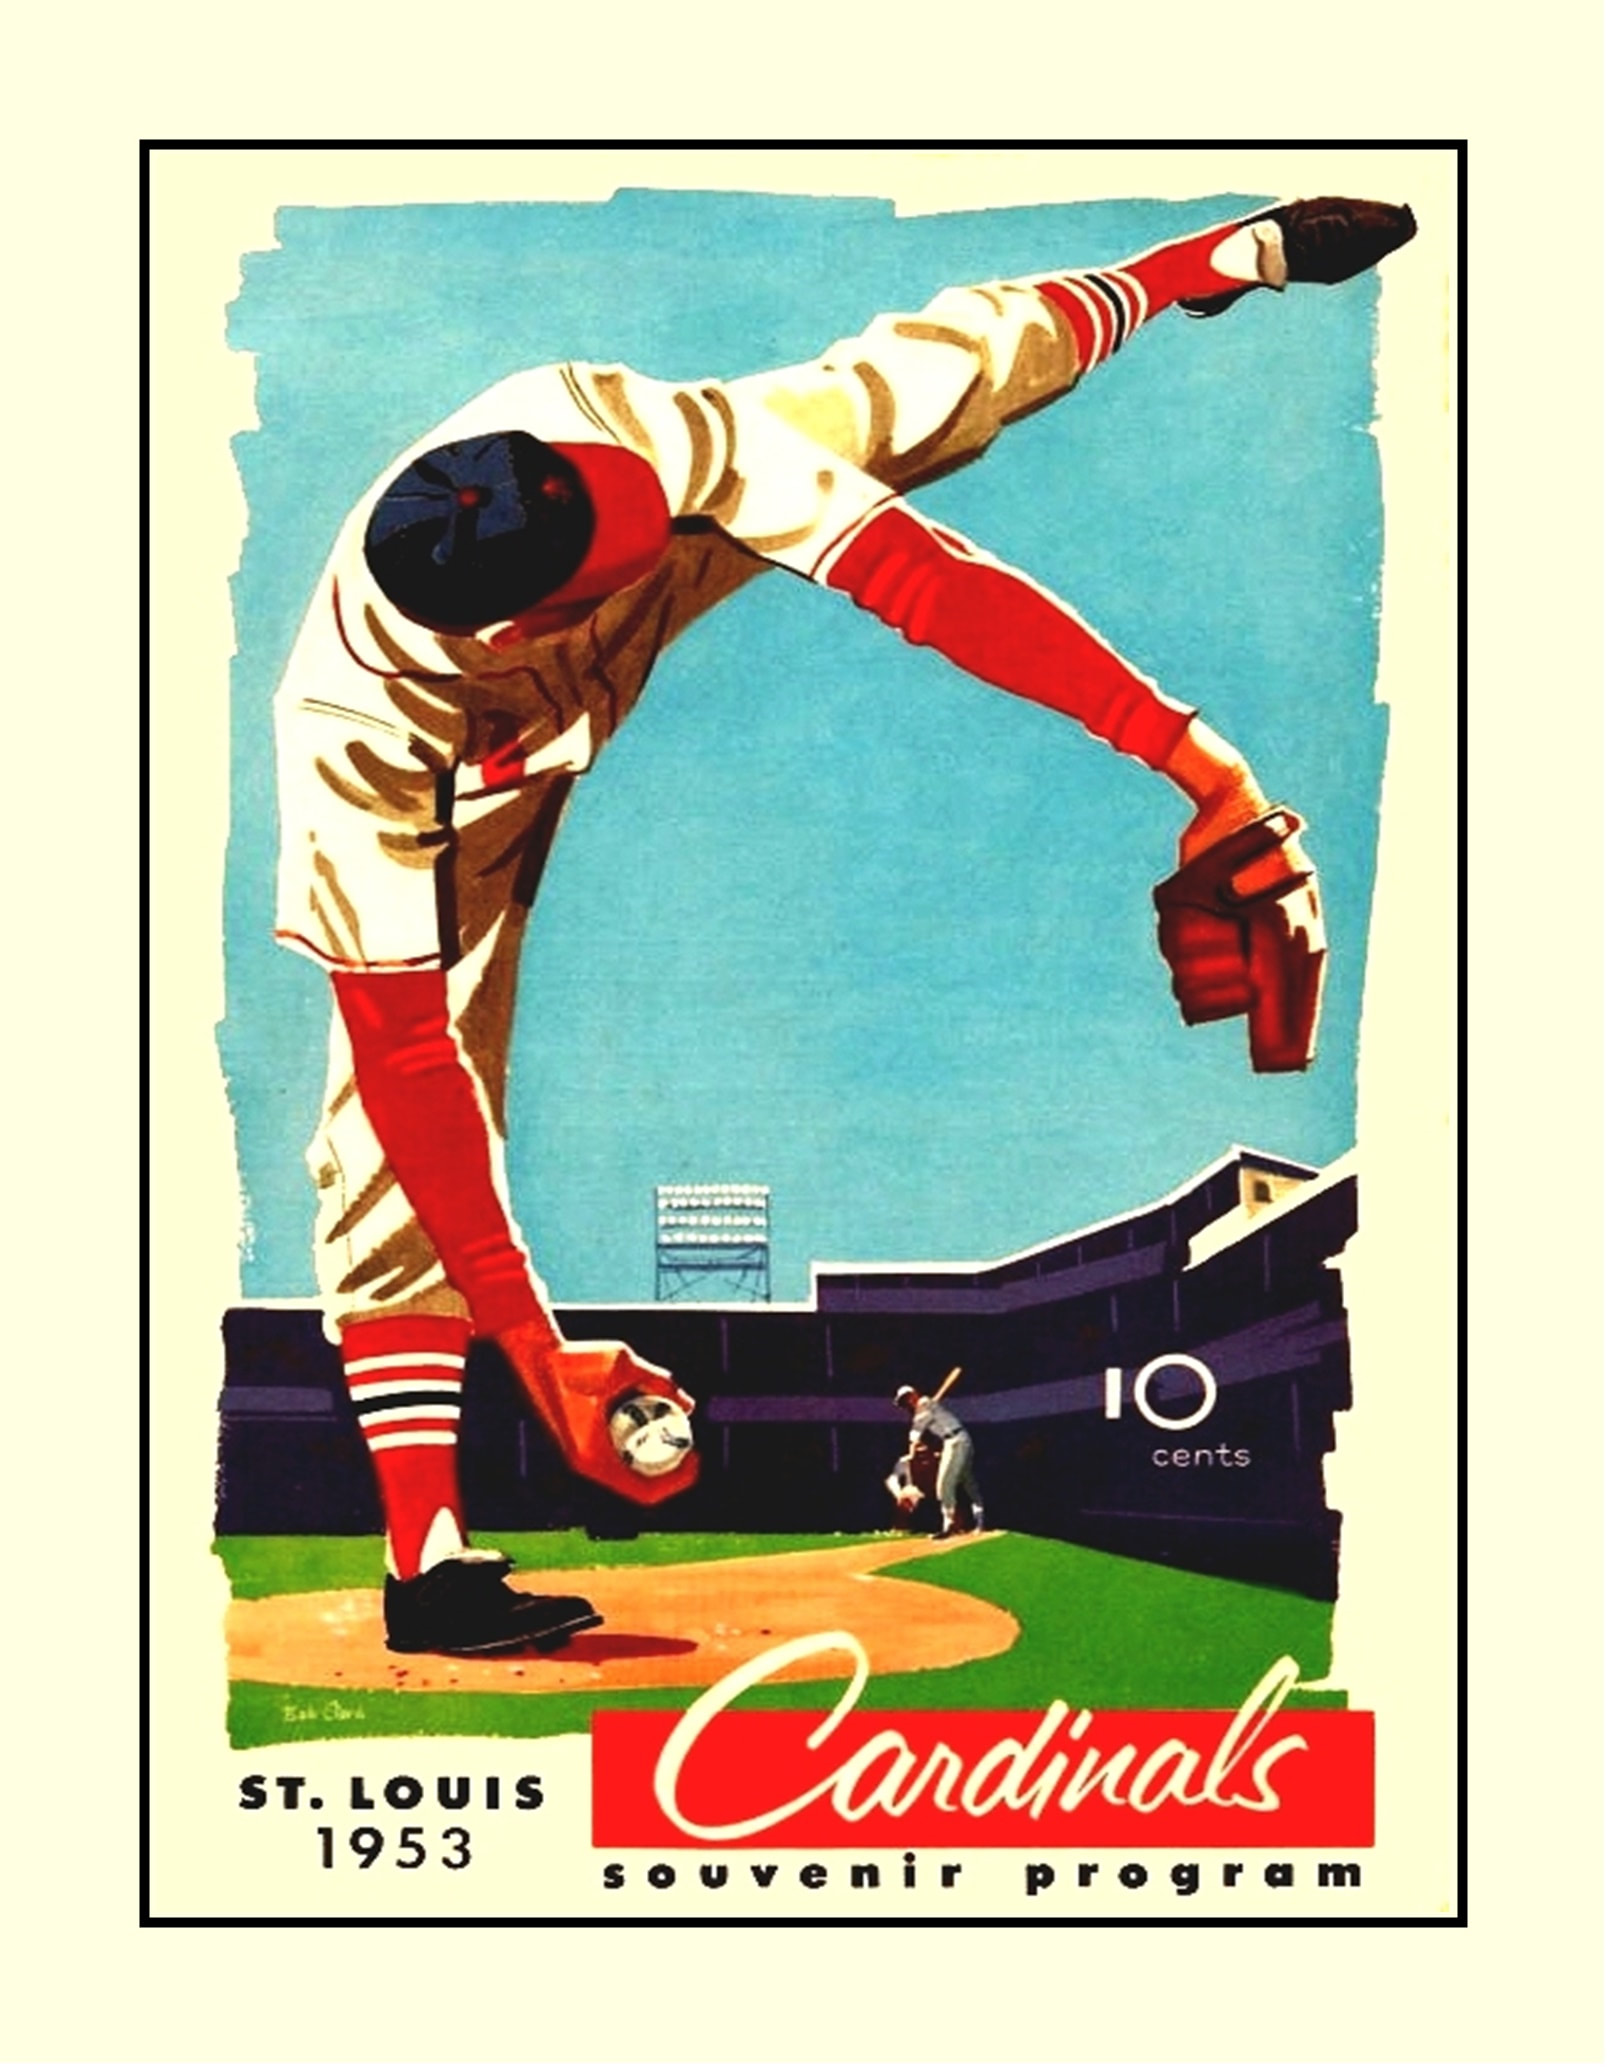 St Louis Cardinals 1954 Program Poster, Unique Gift